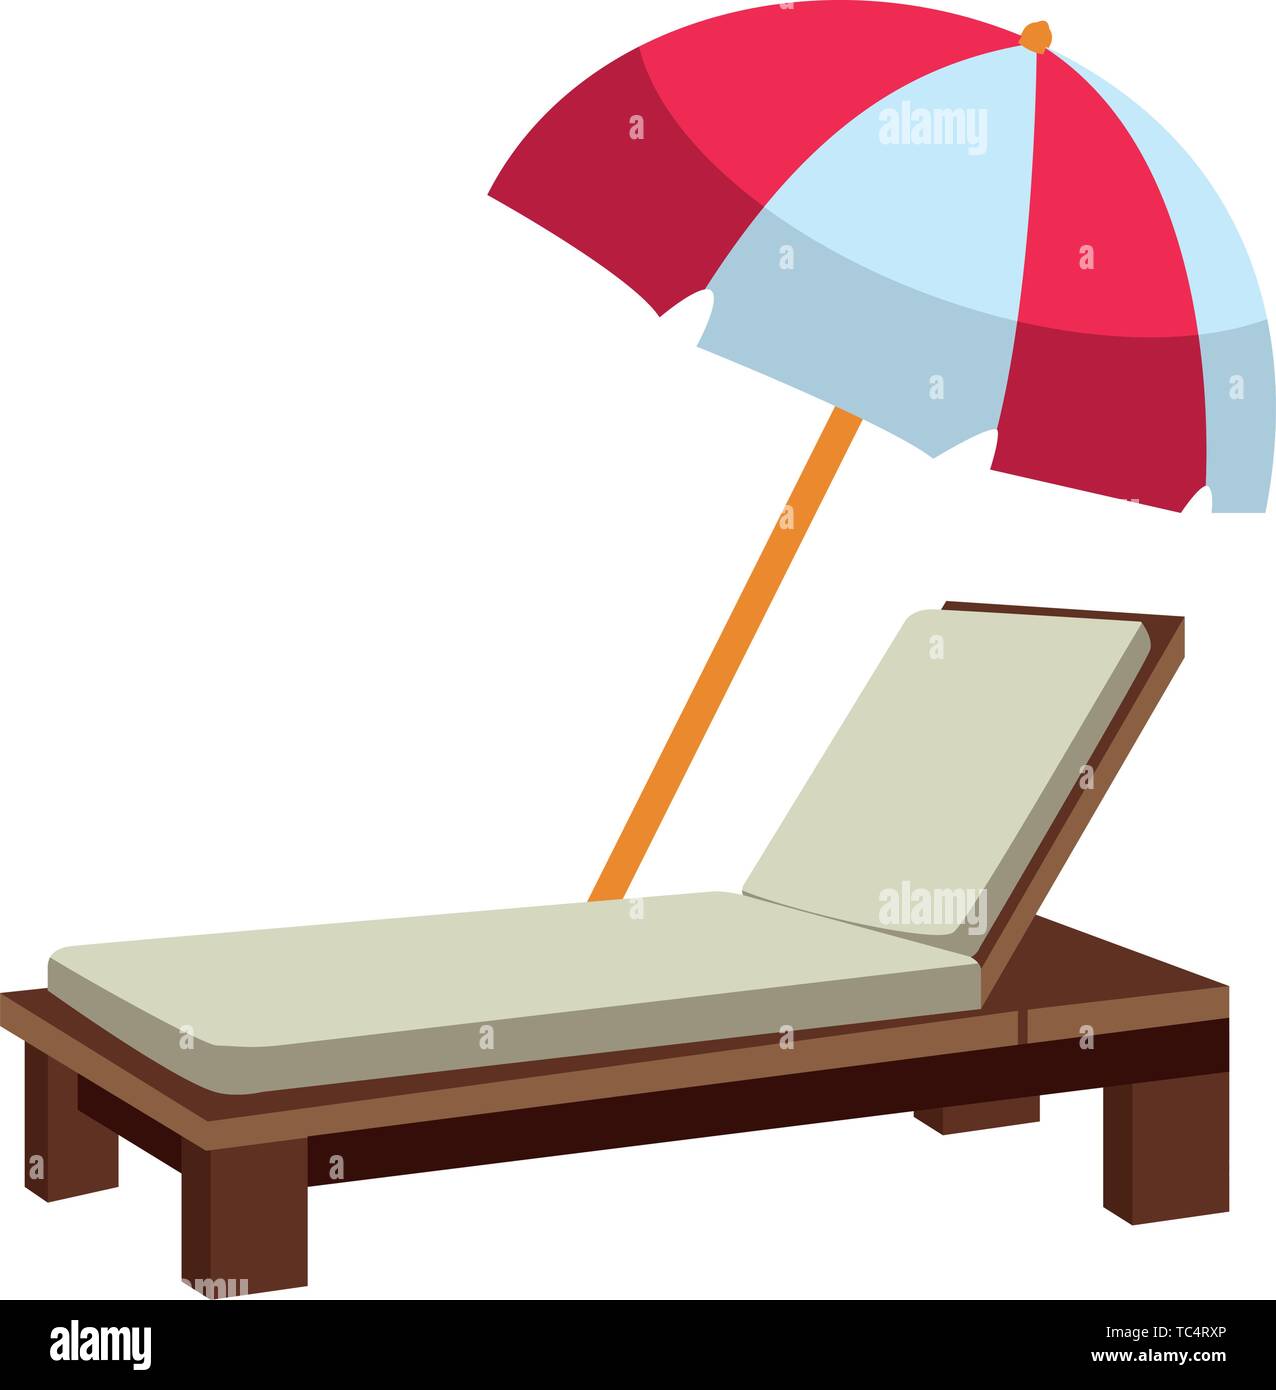 Beach sunchair and umbrella cartoon Stock Vector Image & Art - Alamy